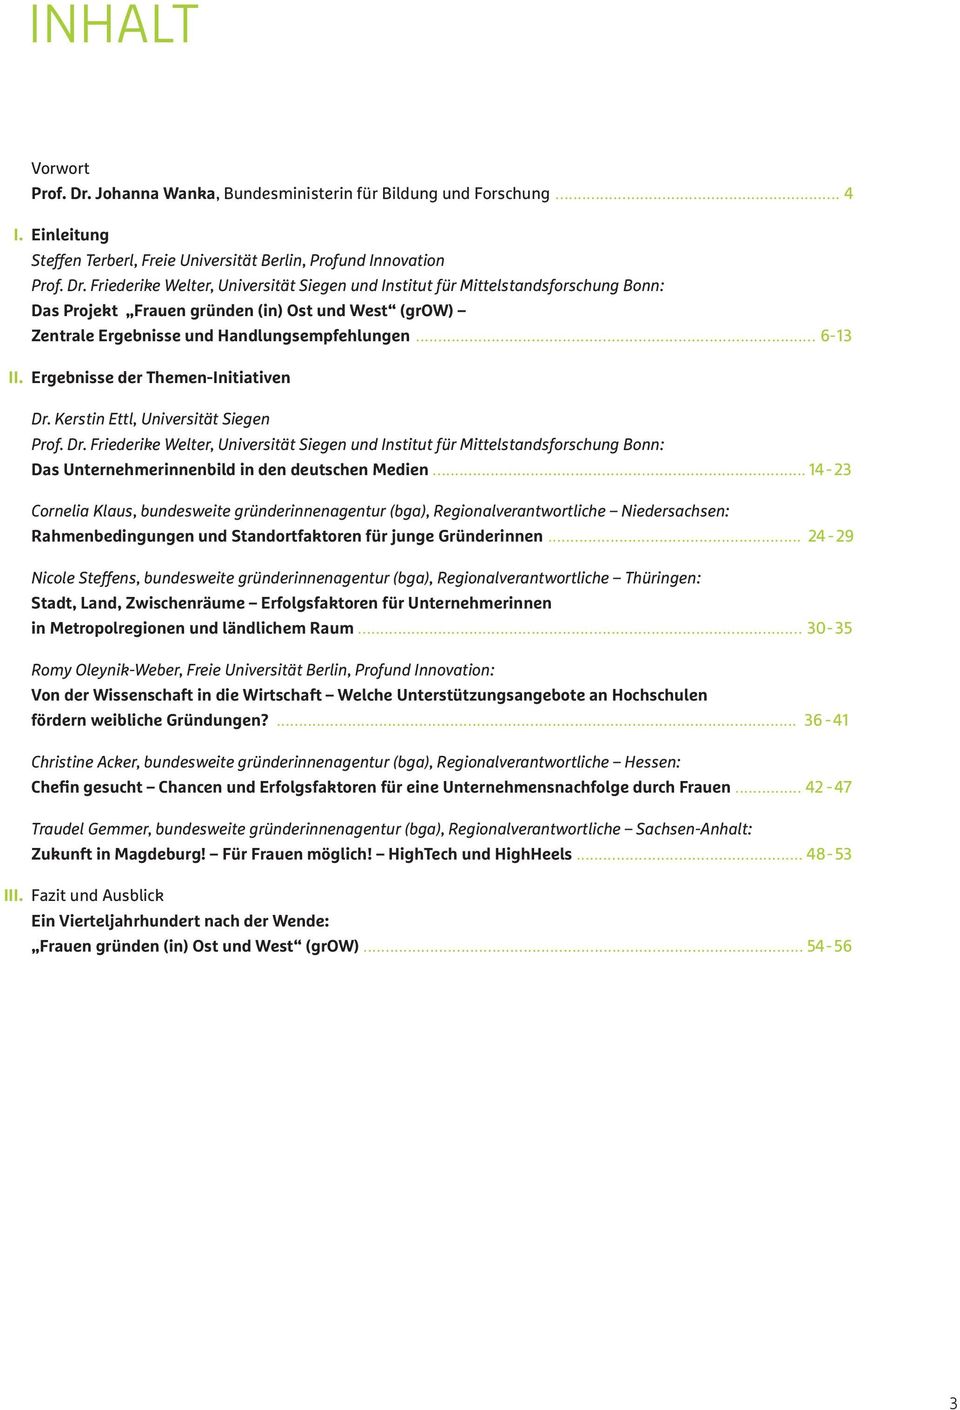 Friederike Welter, Universität Siegen und Institut für Mittelstandsforschung Bonn: Das Projekt Frauen gründen (in) Ost und West (grow) Zentrale Ergebnisse und Handlungsempfehlungen.